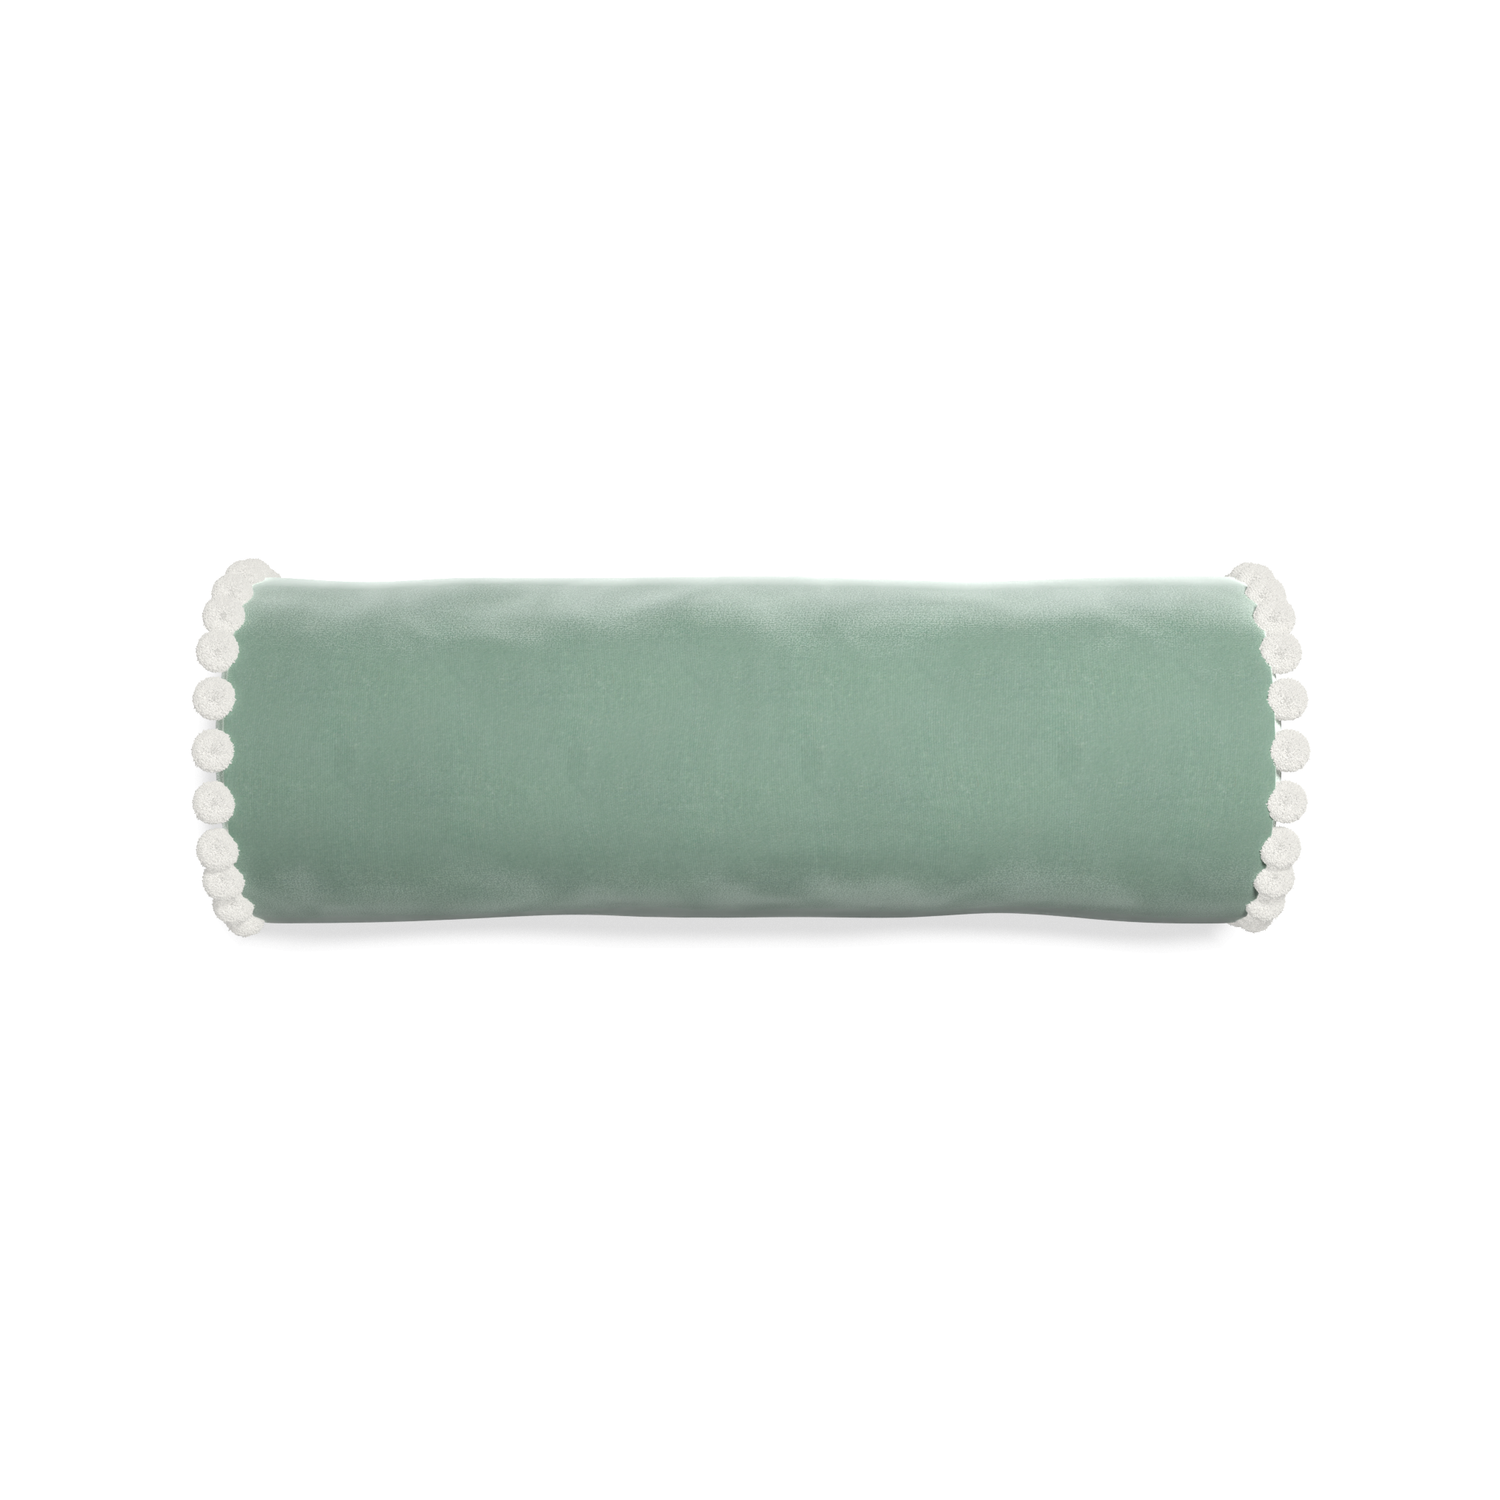 bolster blue green velvet pillow with white pom poms